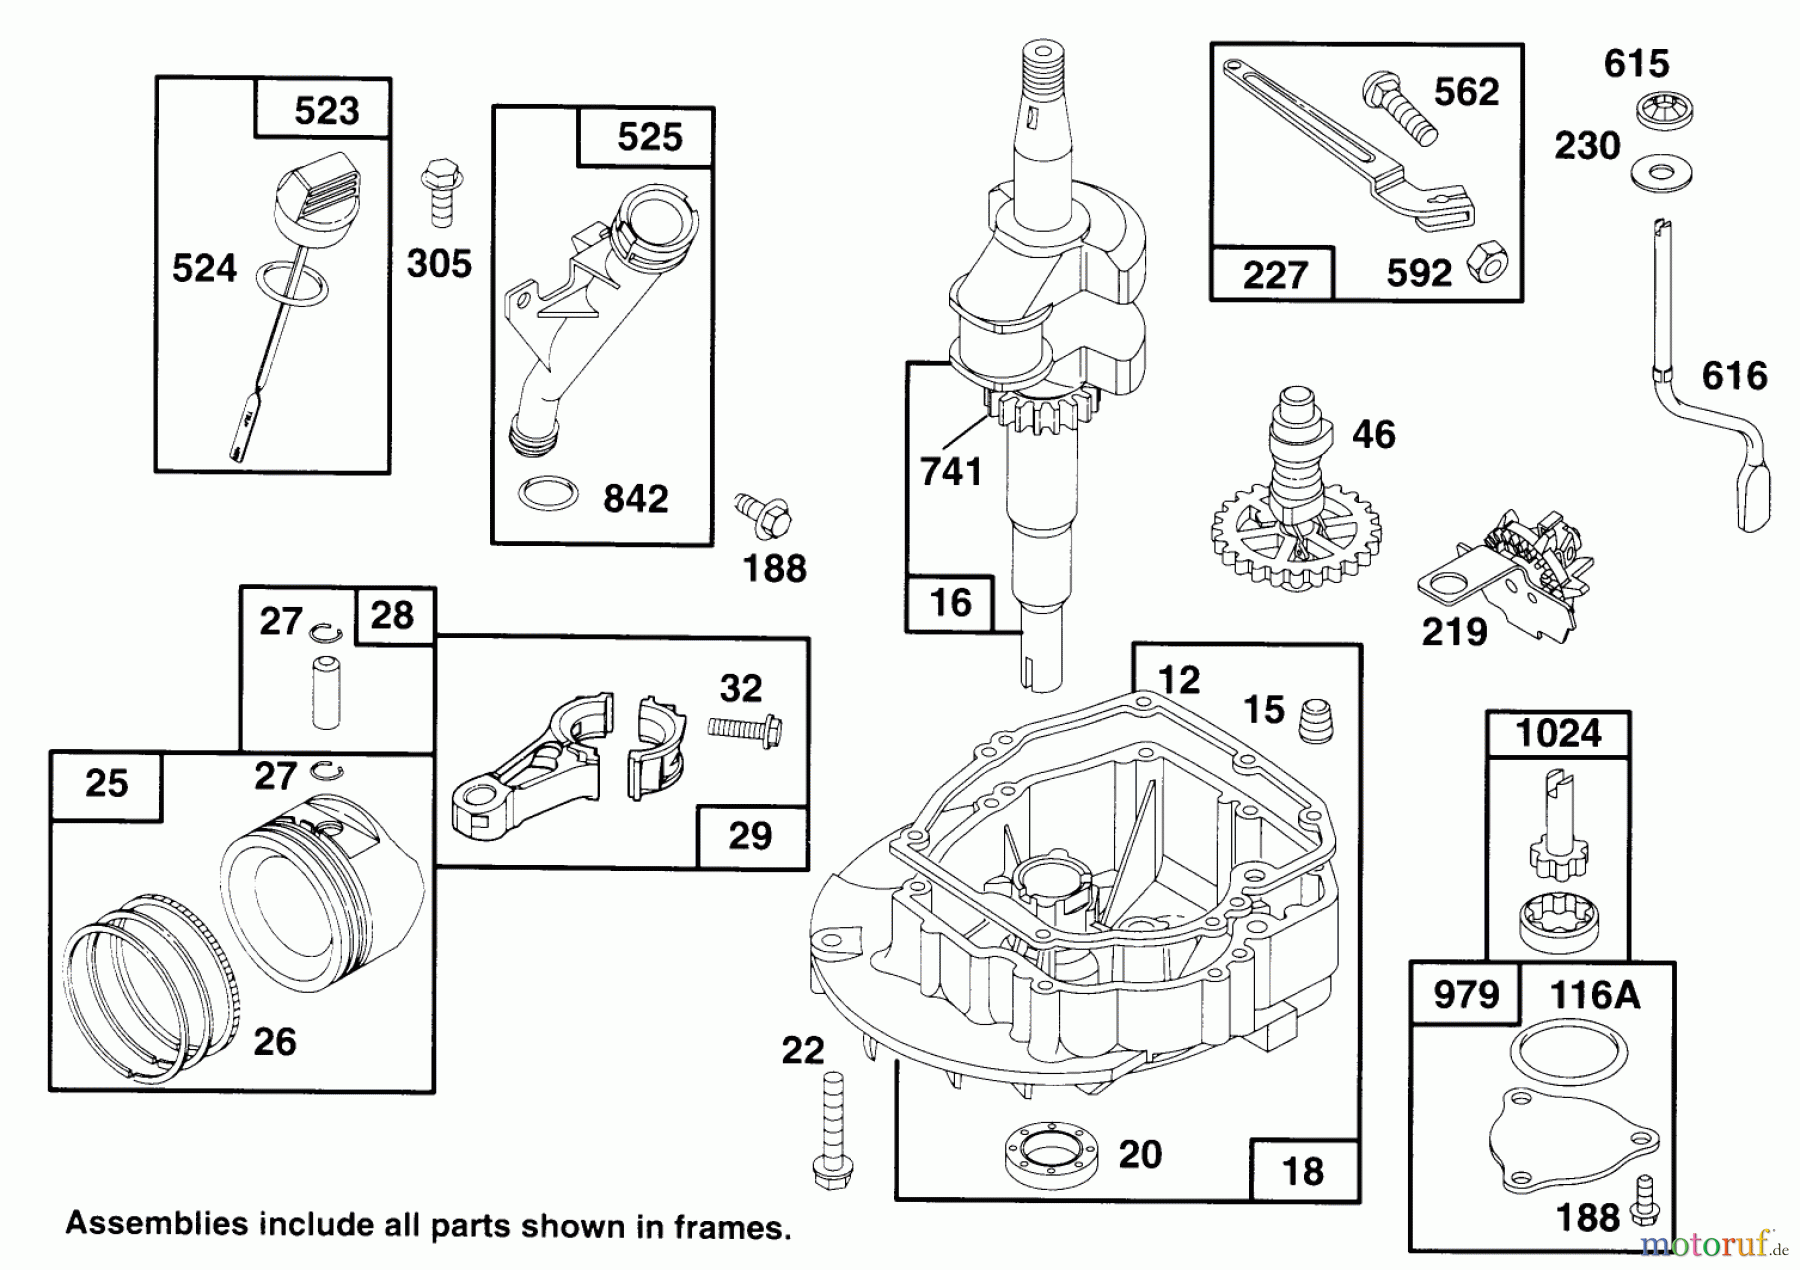  Toro Neu Mowers, Walk-Behind Seite 2 22151 - Toro Lawnmower, 1994 (4900001-4999999) ENGINE GTS 150 #2